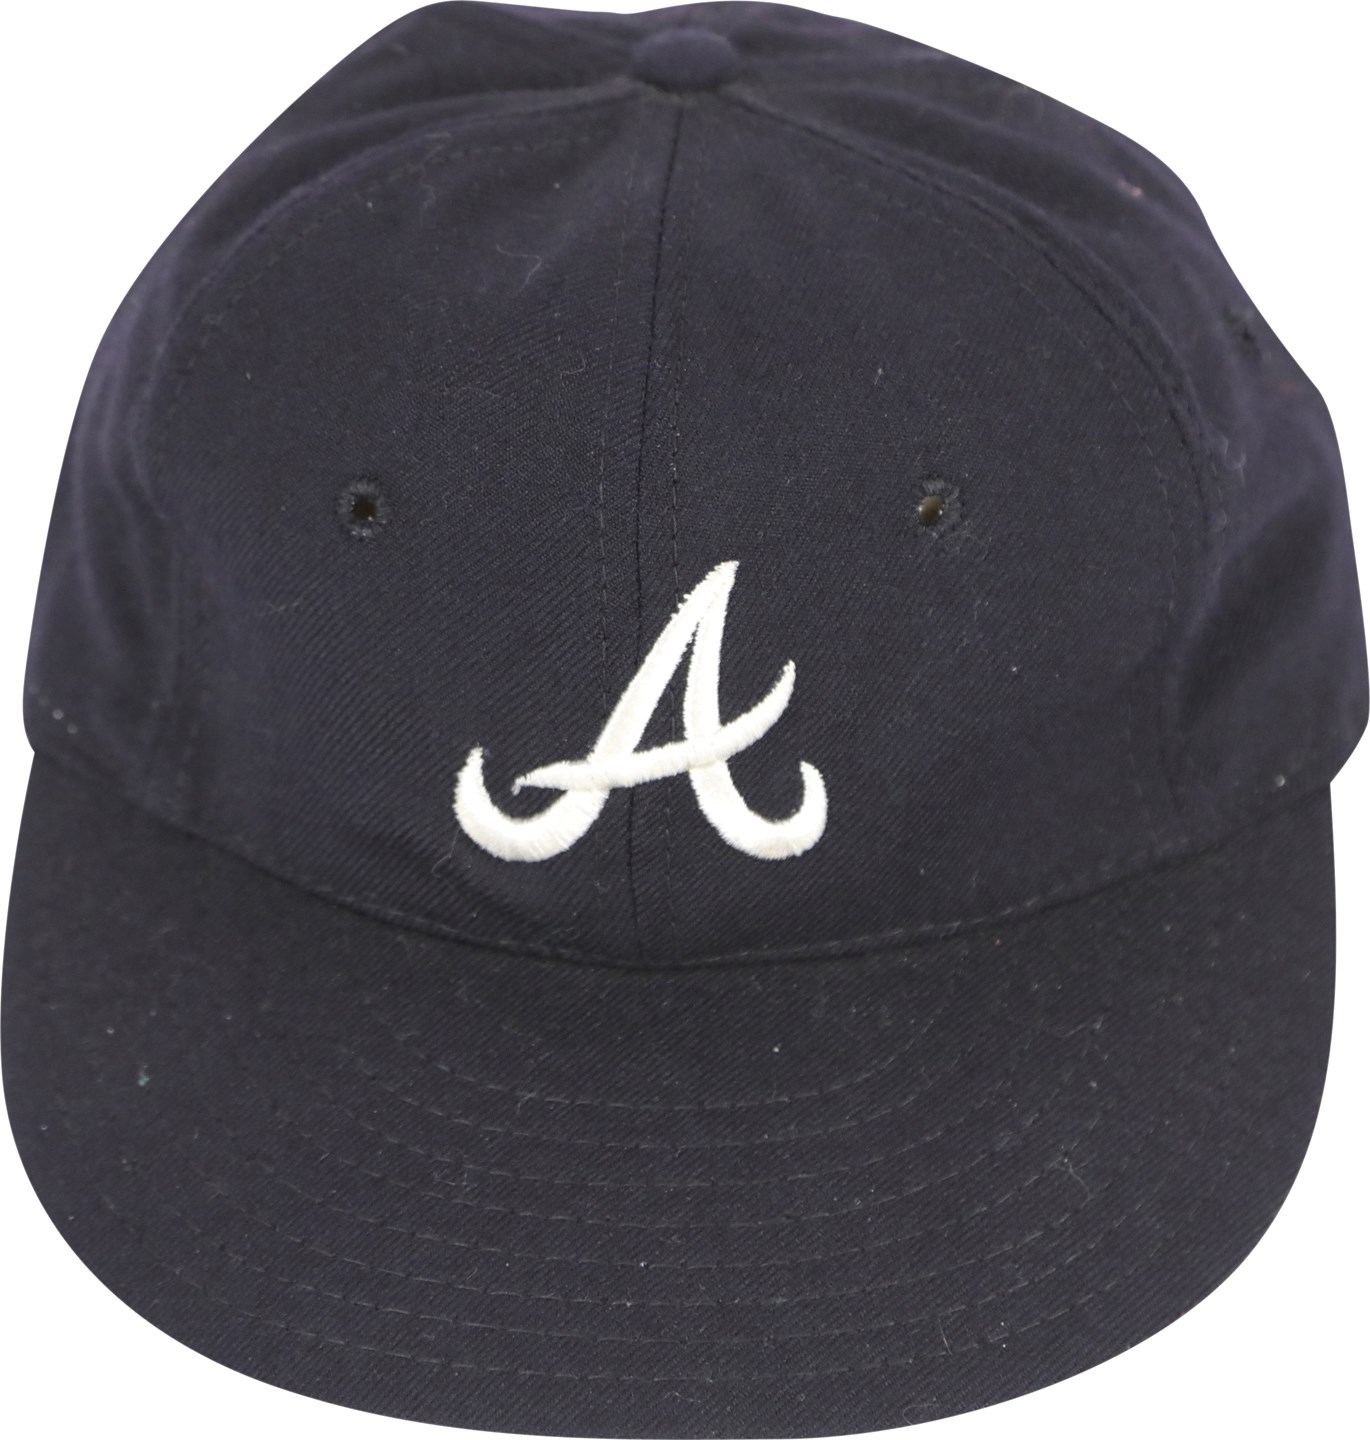 - Circa 1969 Atlanta Braves Game Issued Cap